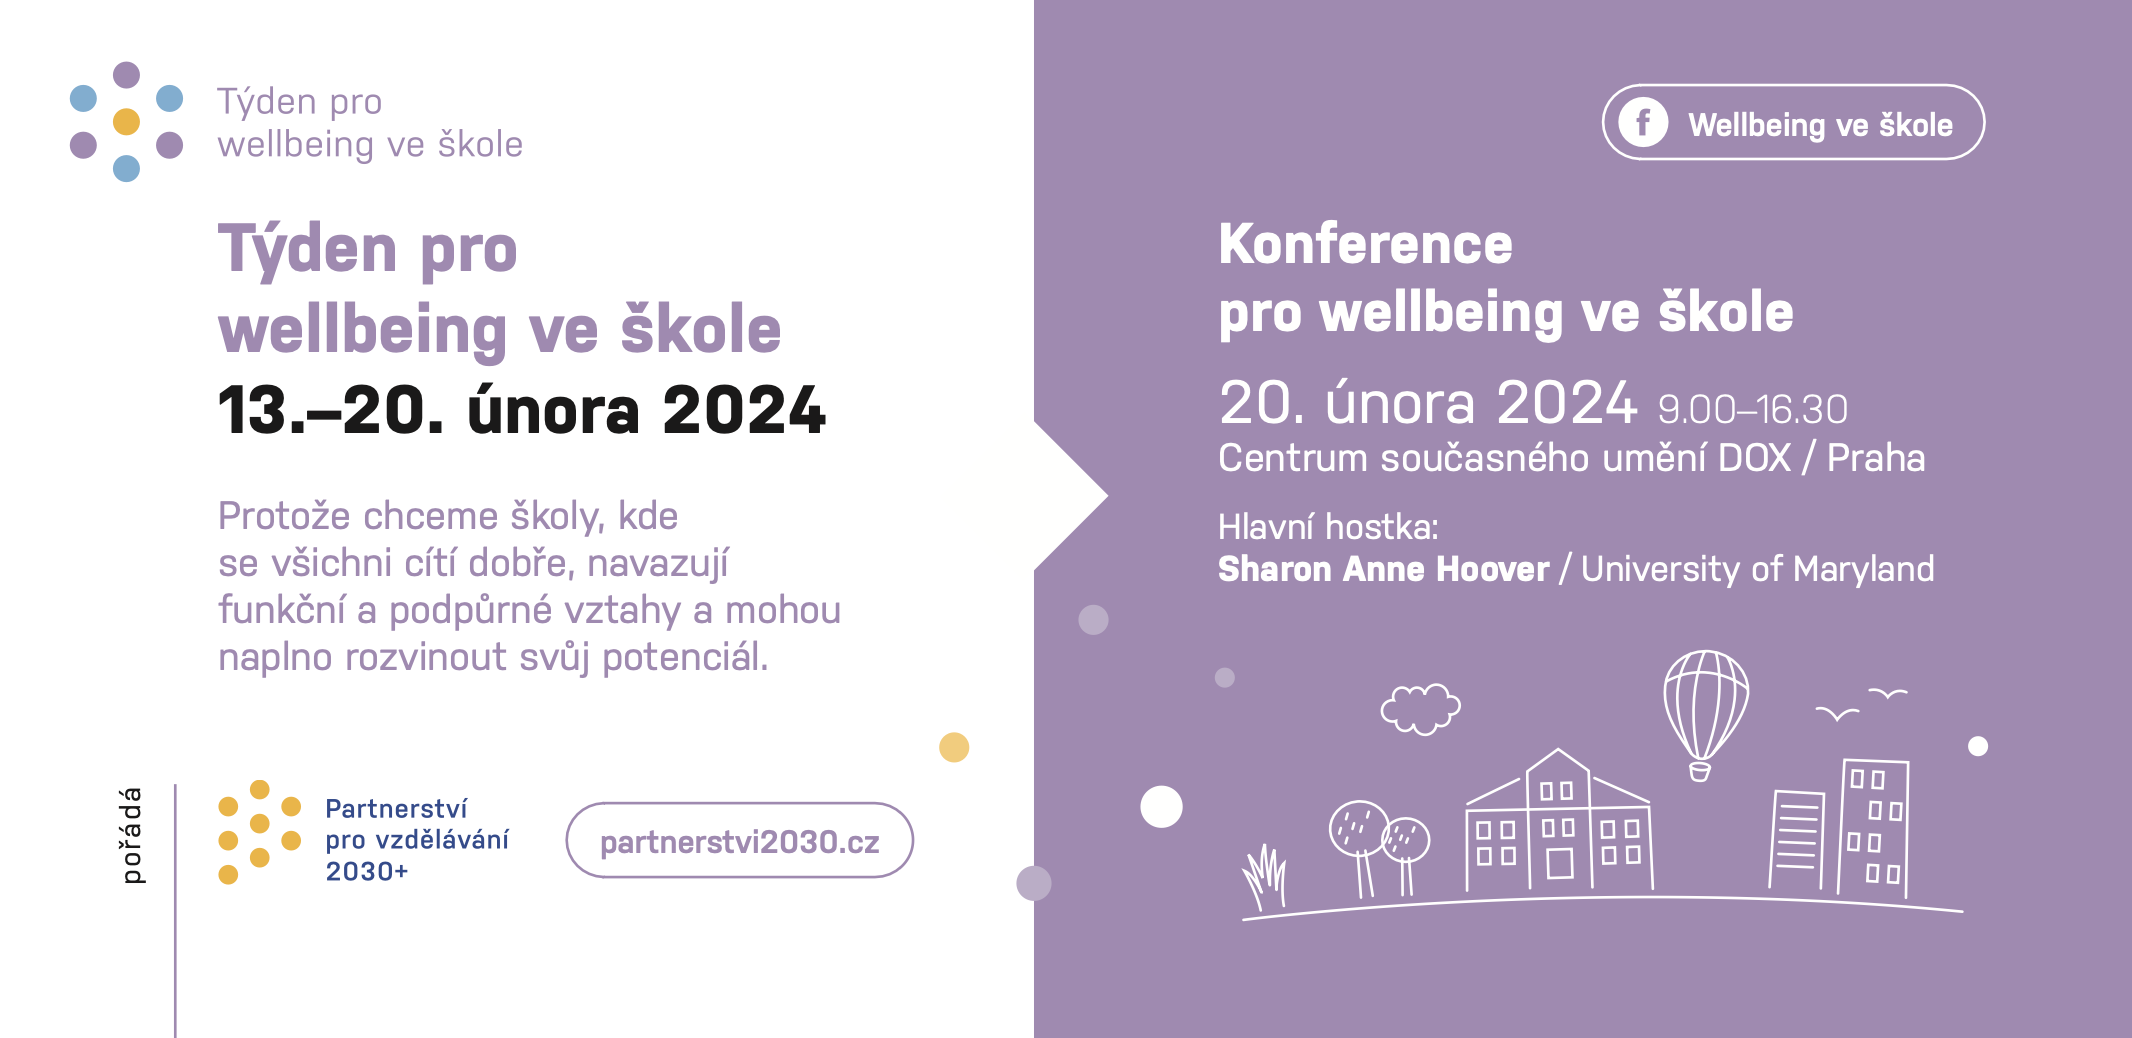 Save the date - Konference pro wellbeing ve škole: Save the date - Partnerství 2030